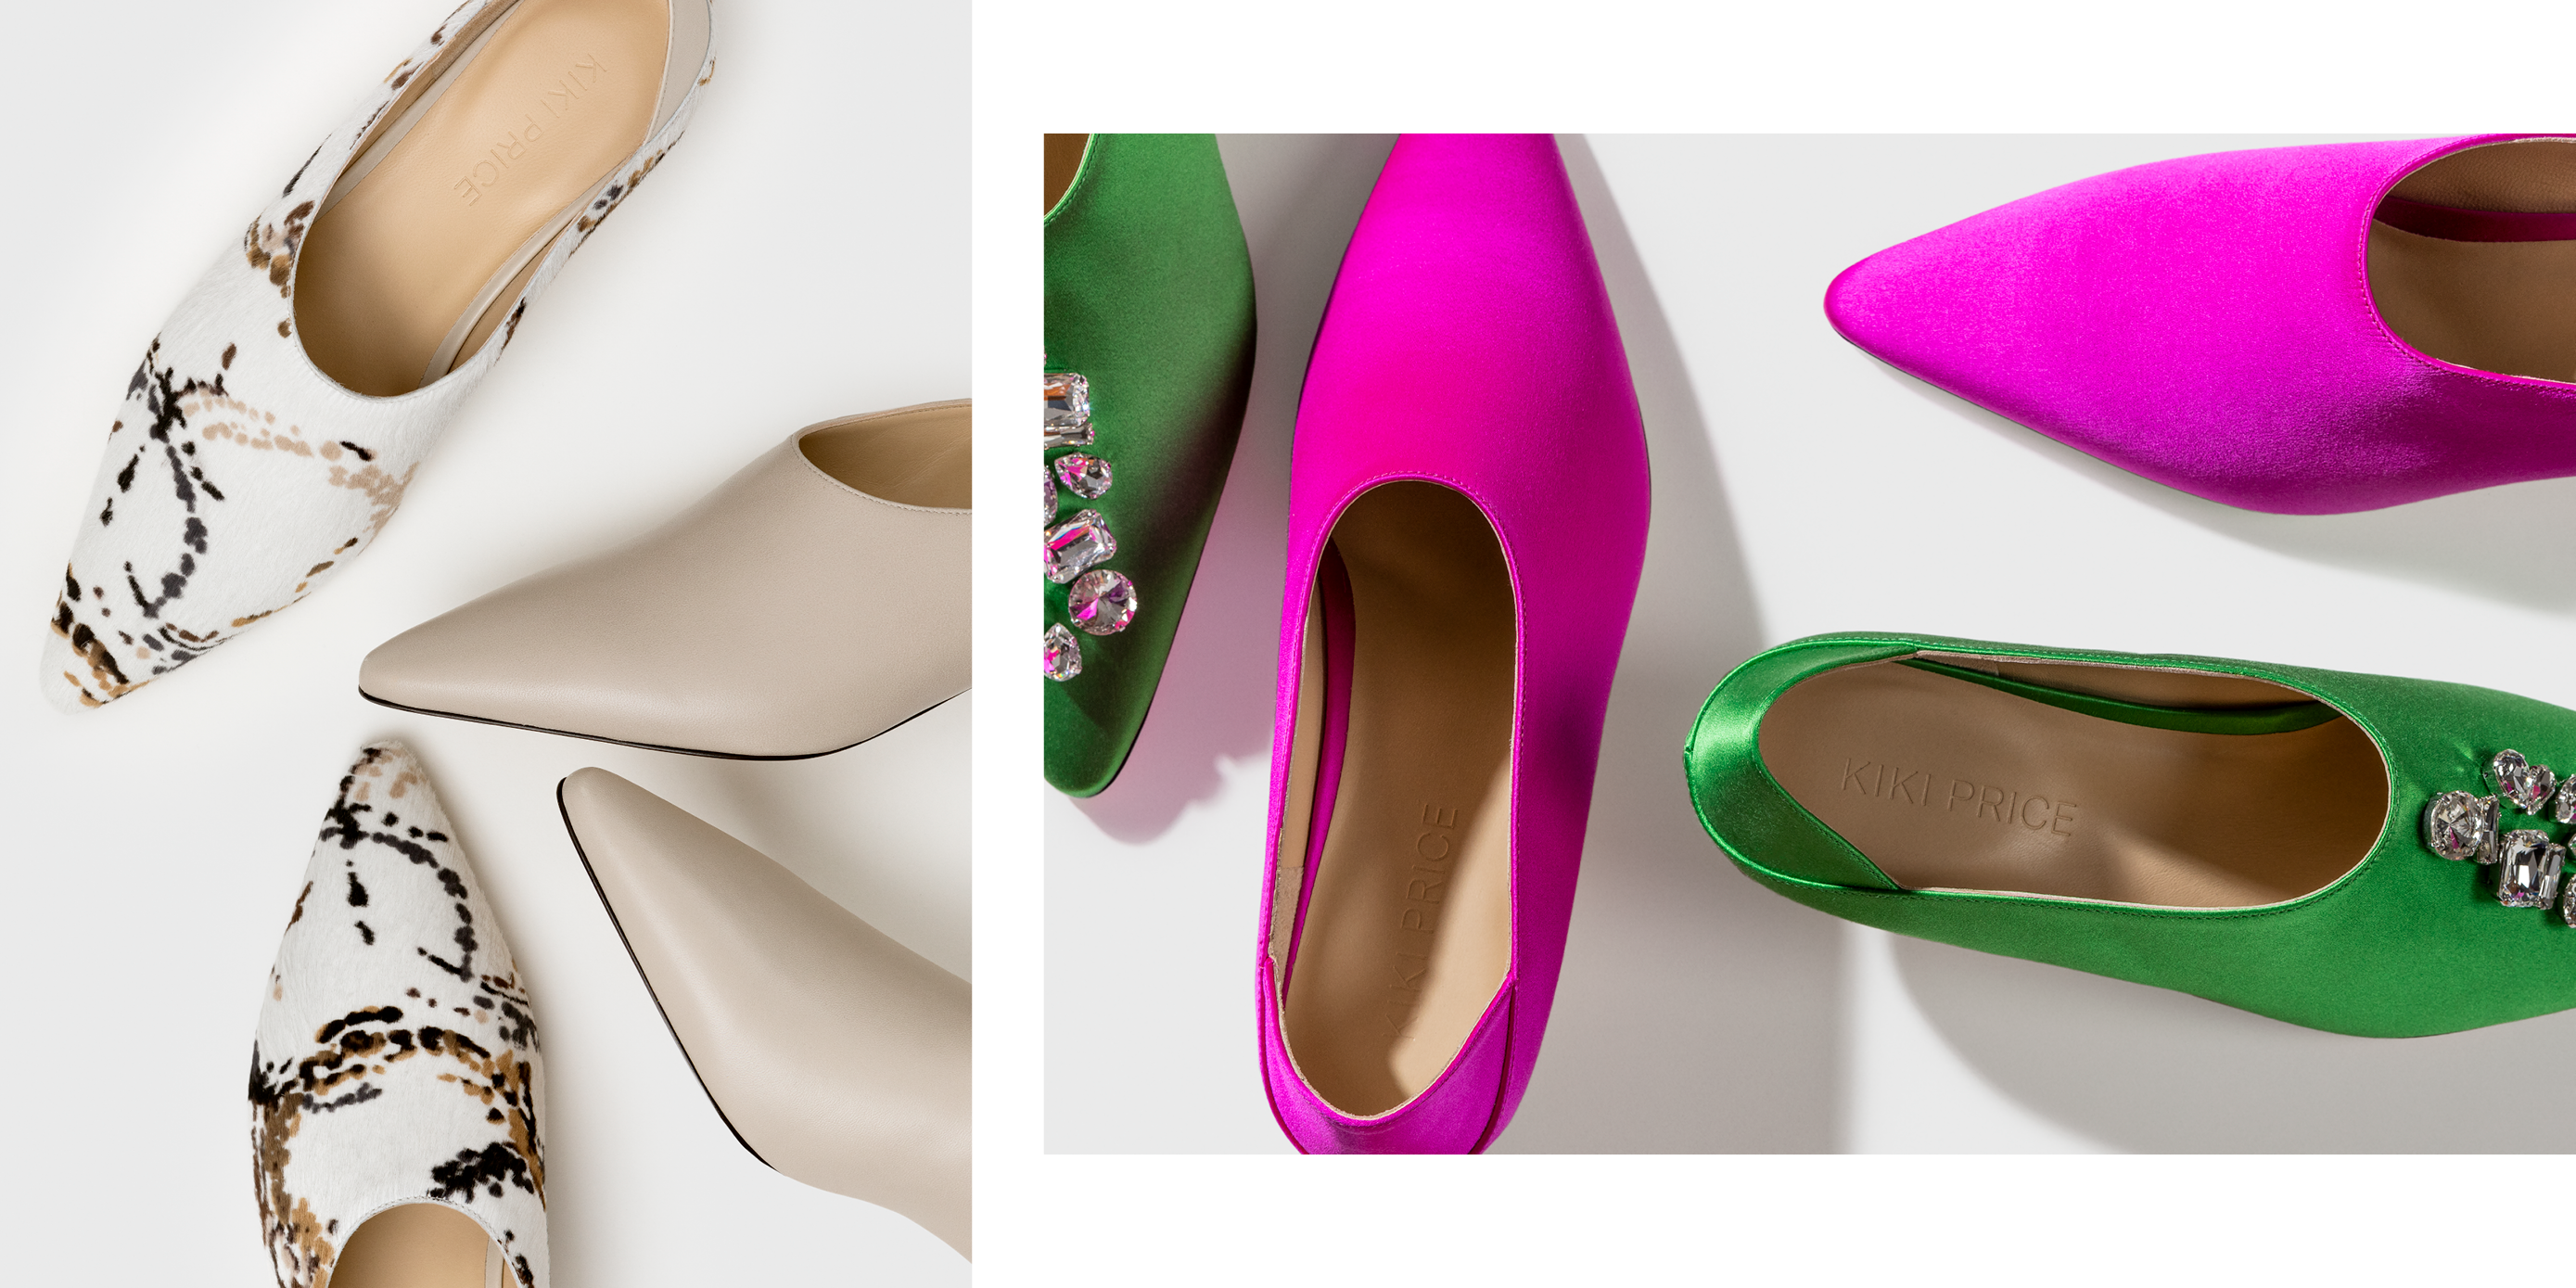 High Heel Shoe Collection New York City - Deals On Heels - YouTube | High  heel shoes, Shoe collection, High heels